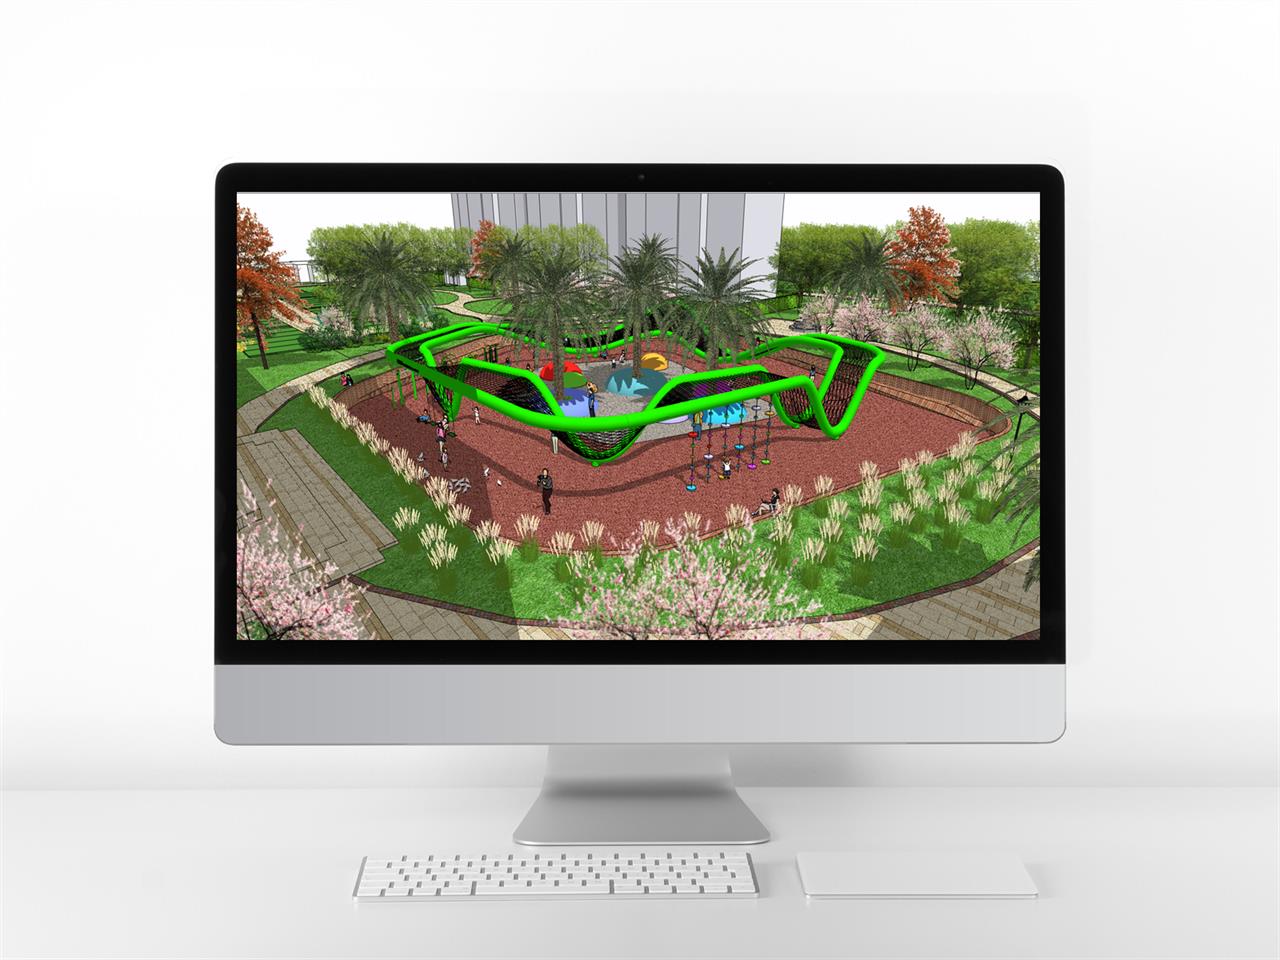 간략한 공원광장 디자인 웹툰배경 샘플 제작 미리보기